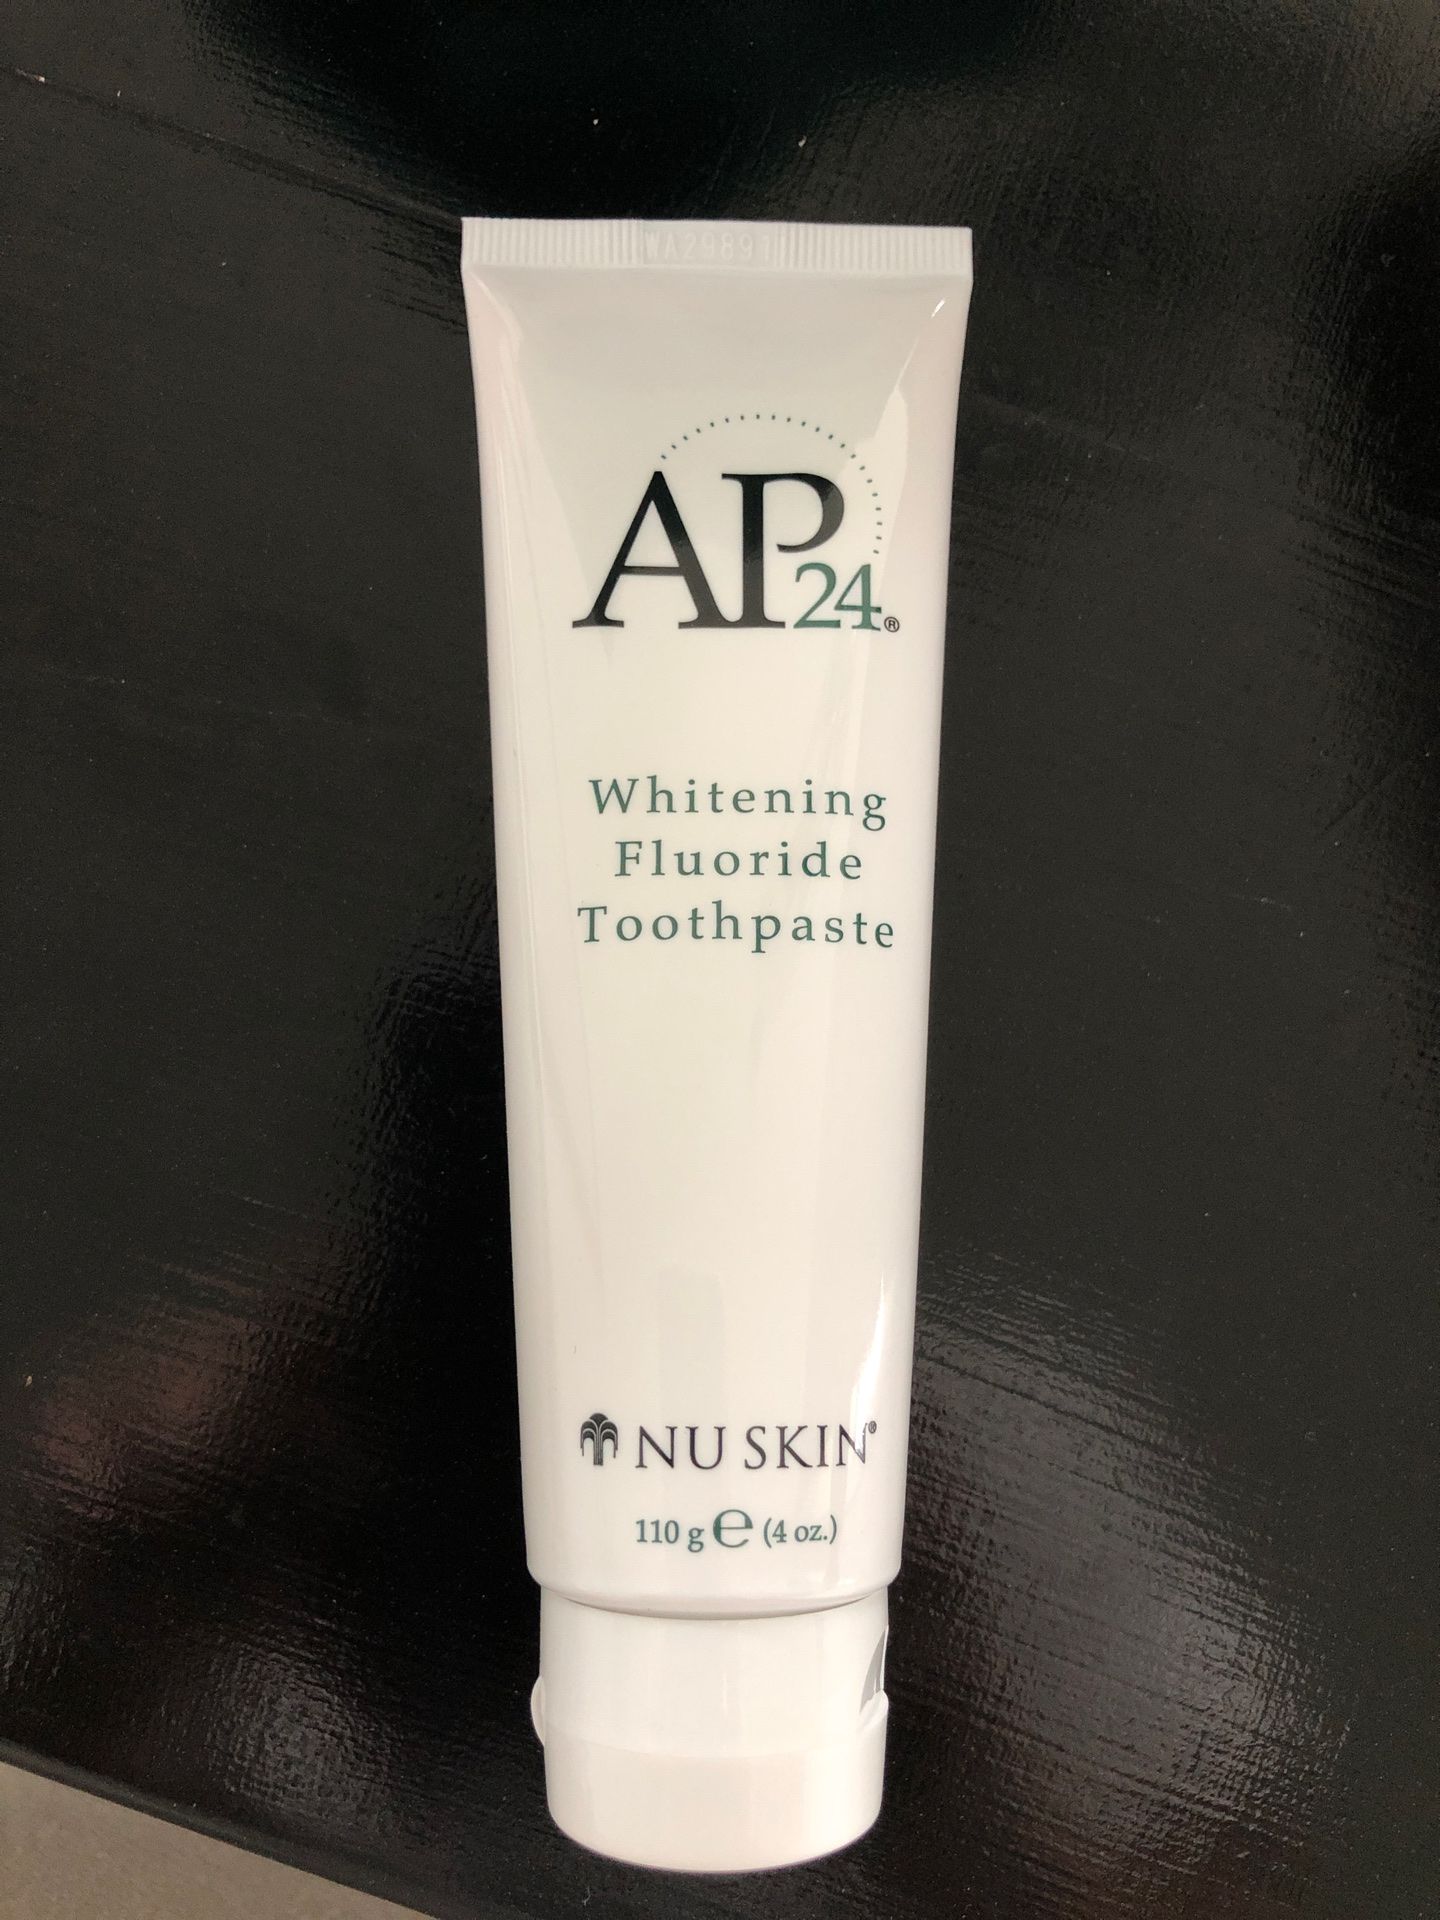 NuSkin whitening toothpaste